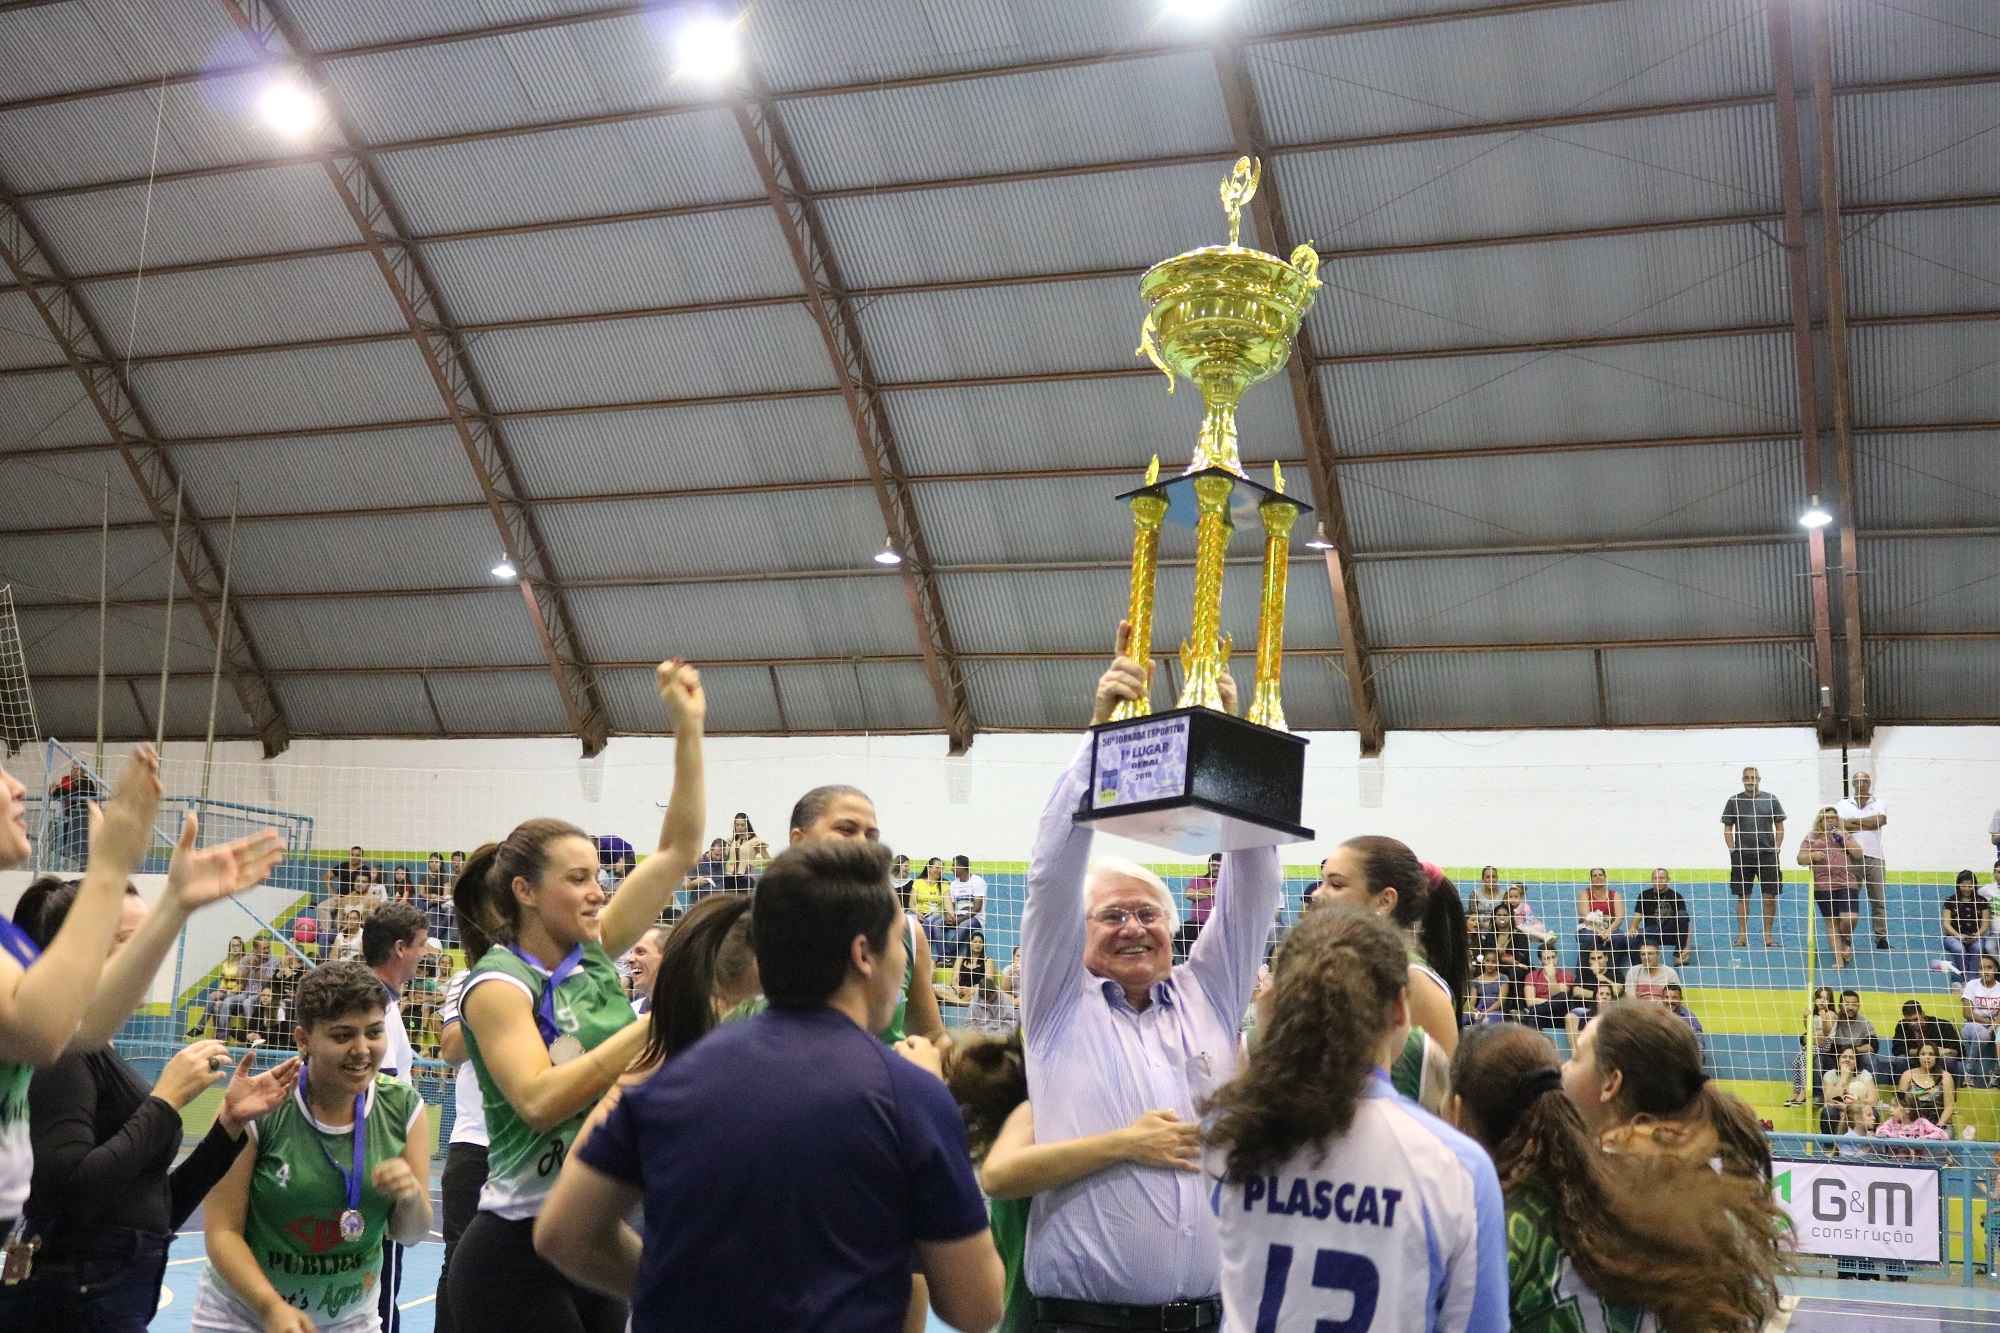 Prefeito Bica levanta a taça de campeão geral da Jornada Esportiva. Foto: Prefeitura Municipal de Ibirá.